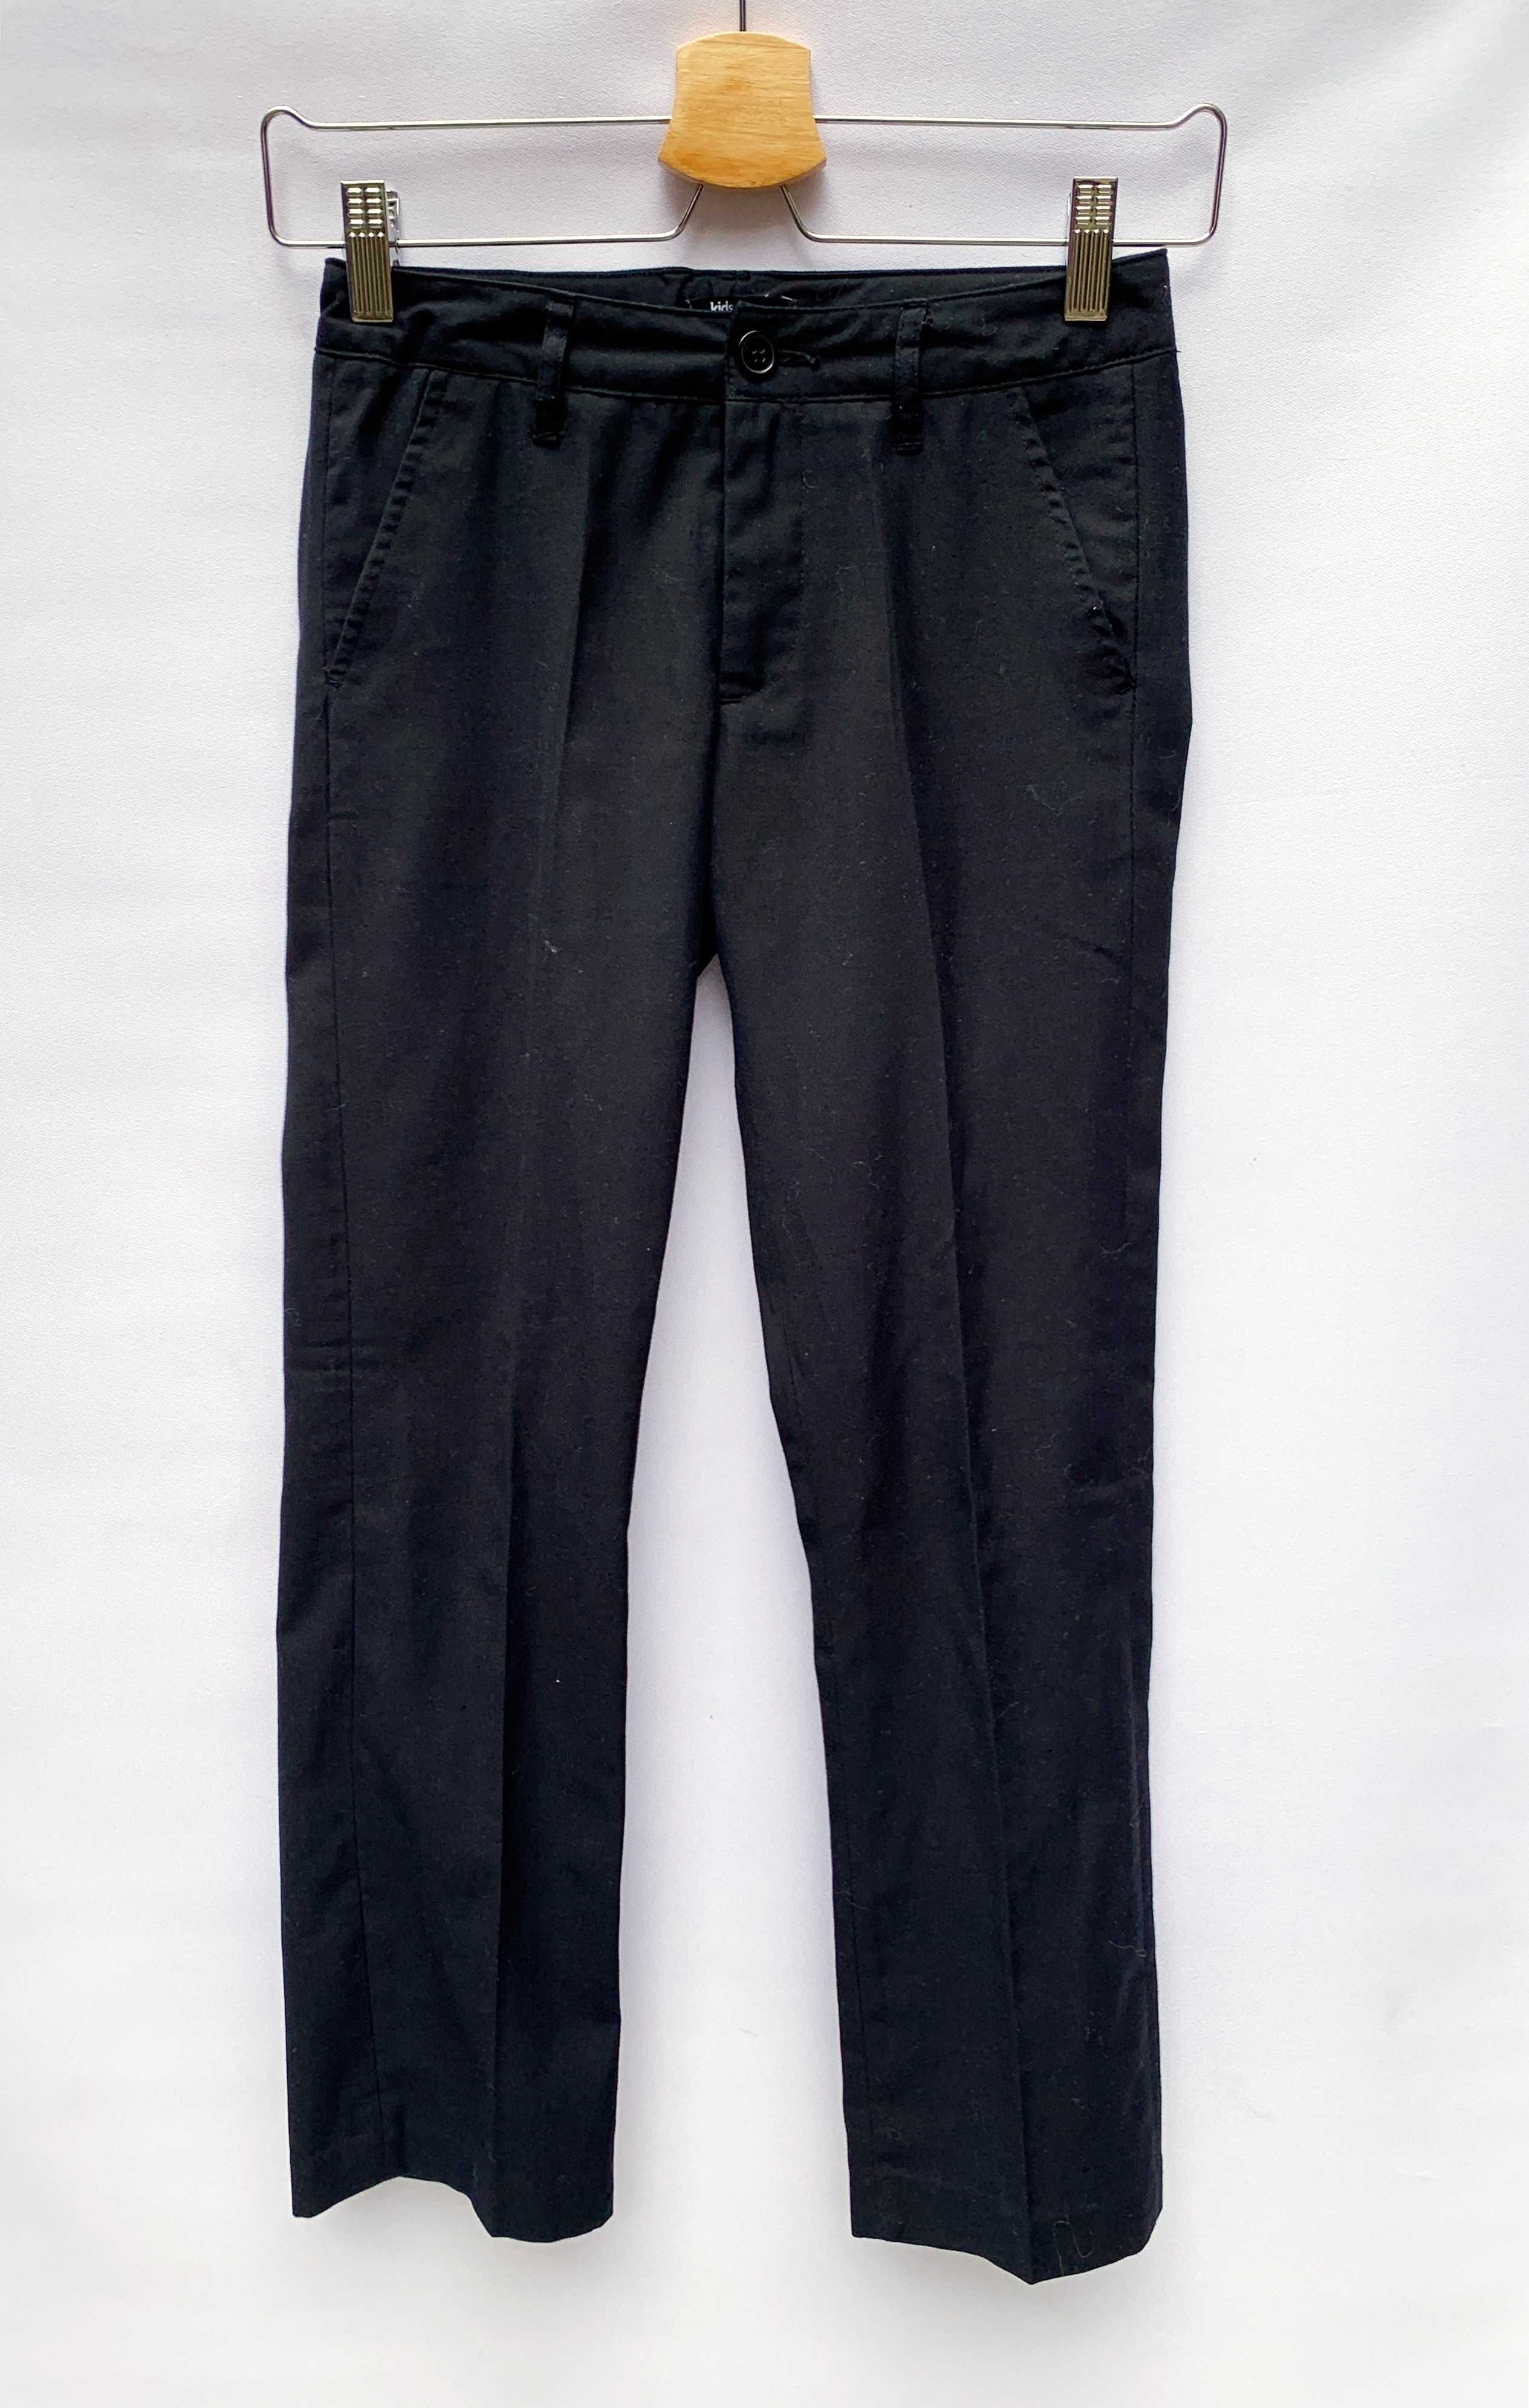 Spodnie Czarne Lindex 140 cm 9 10 lat Eleganckie